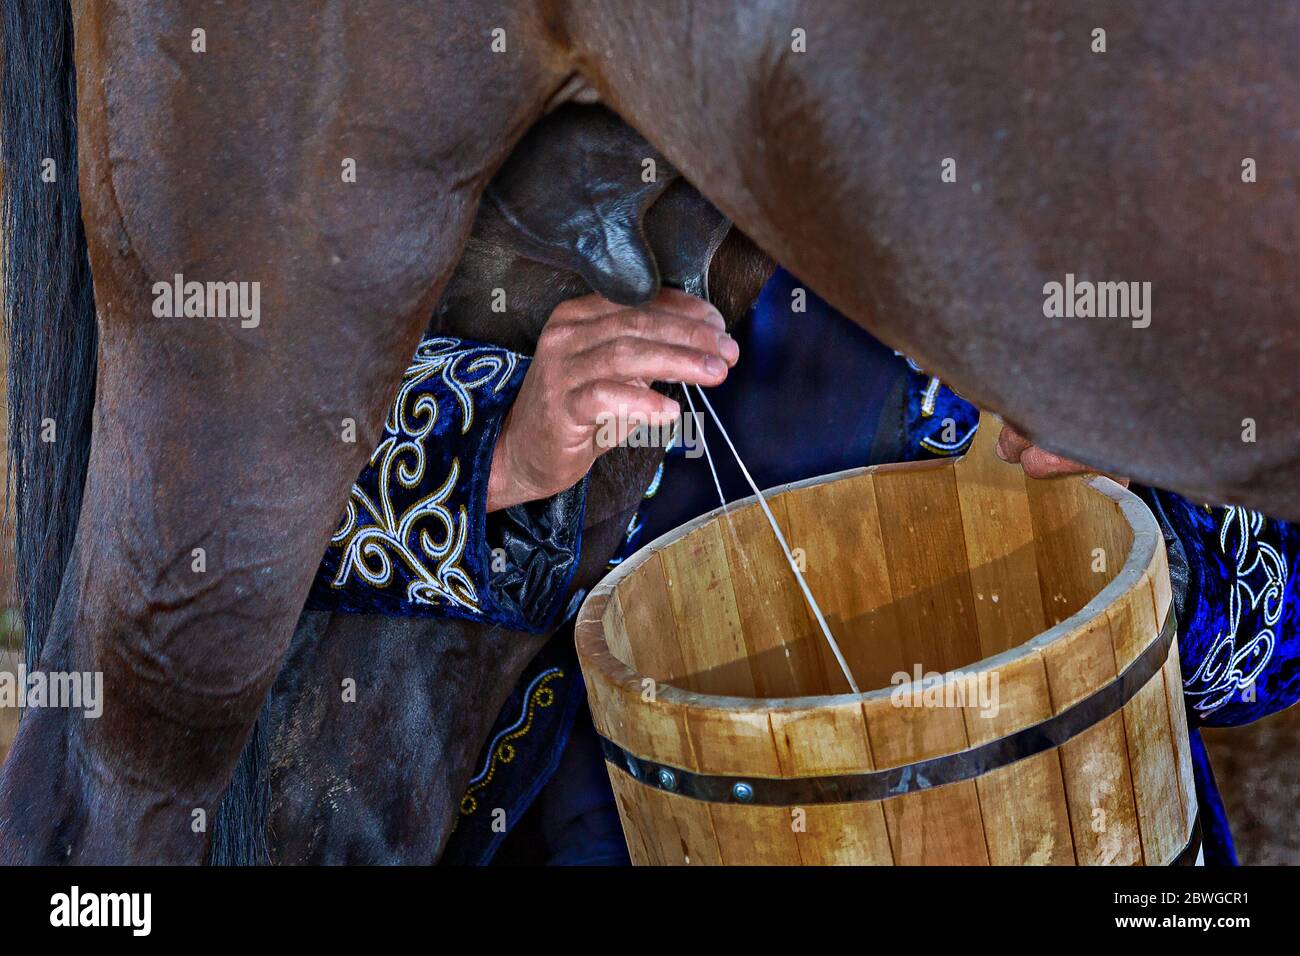 Le mani della donna mungono il cavallo in un secchio di legno, Bishkek, Kirghizistan Foto Stock